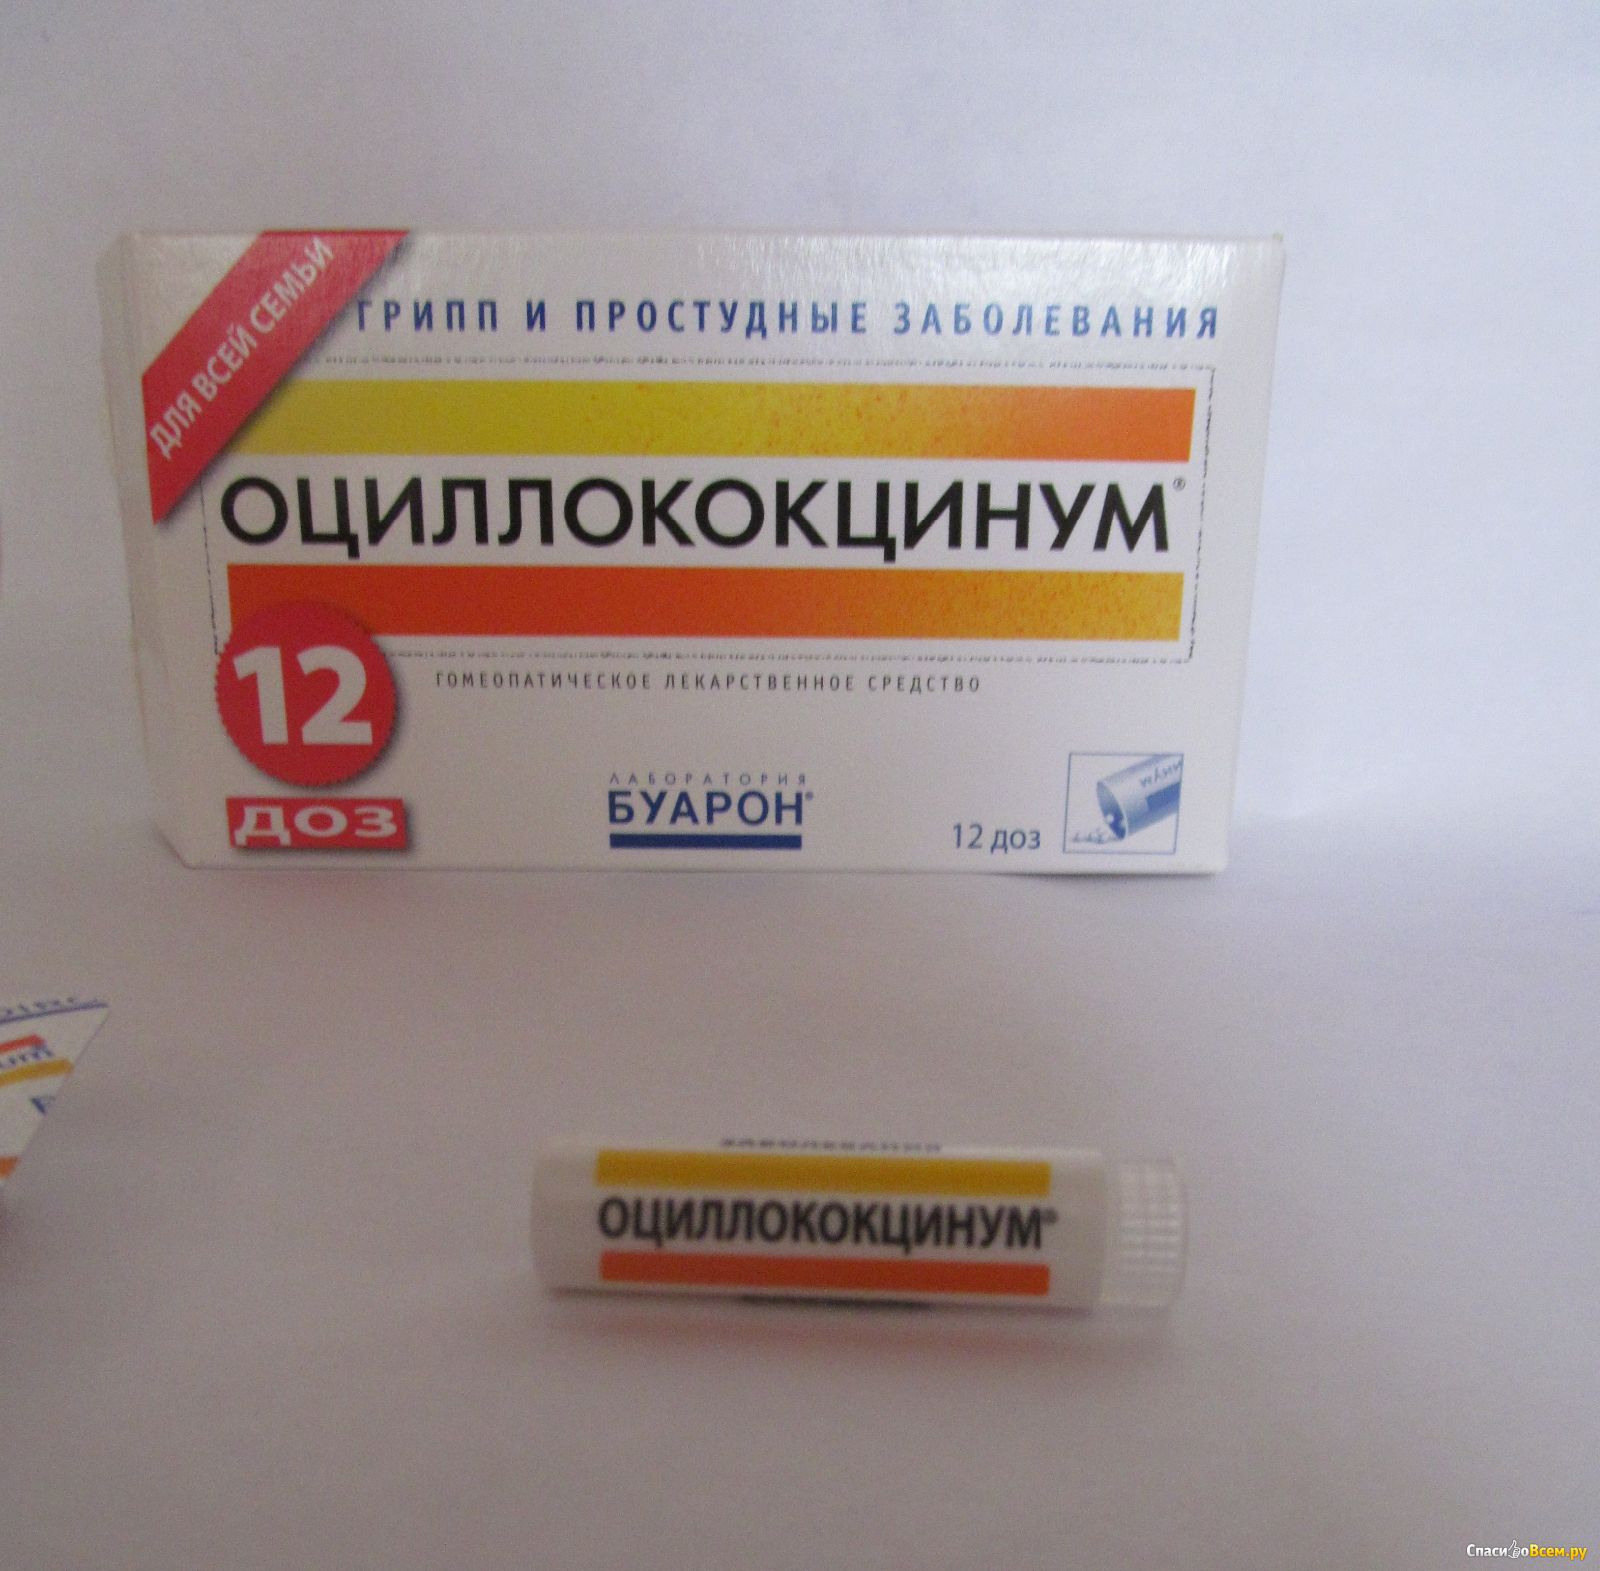 Антибиотик от гриппа взрослым недорогой. Оциллококцинум n12 гранулы. Противовирусные таблетки Оциллококцинум. Противовирусное гомеопатическое средство Оциллококцинум. Лекарство гомеопатия Оциллококцинум.